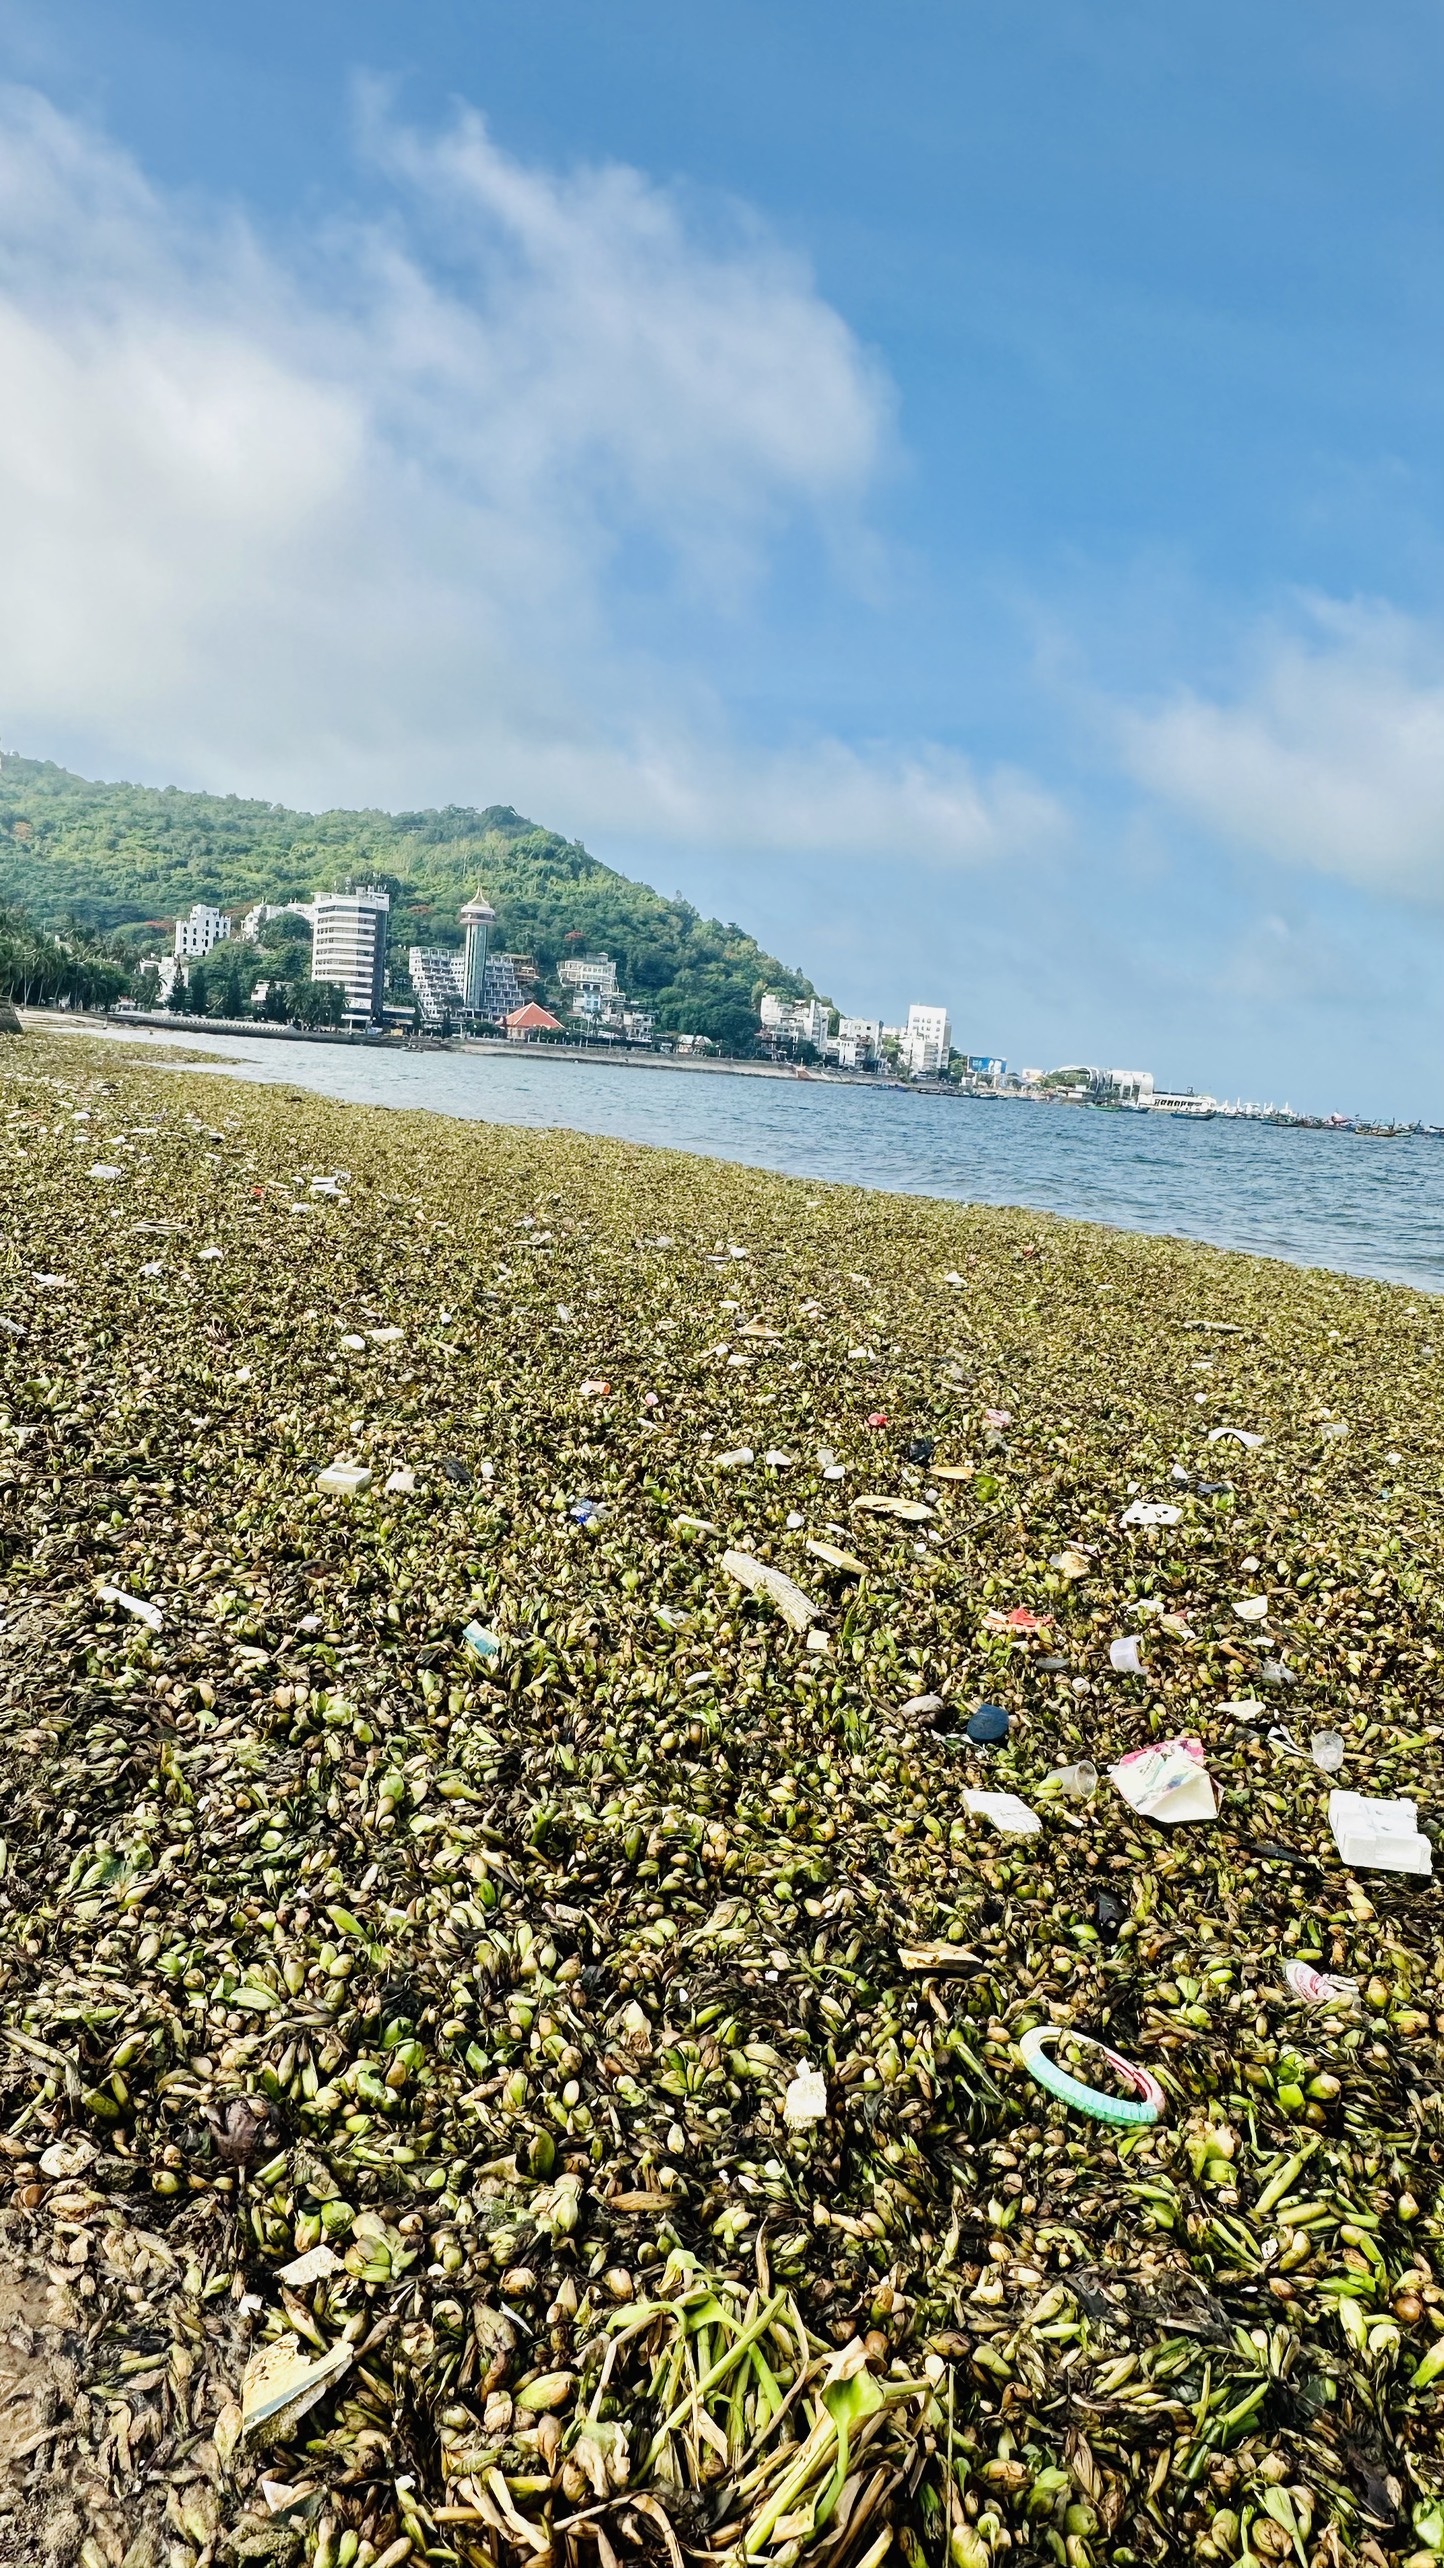 Thay vì màu xanh thì nay những bãi biển Vũng Tàu tràn ngập màu úa của lục bình và các loại rác thải.